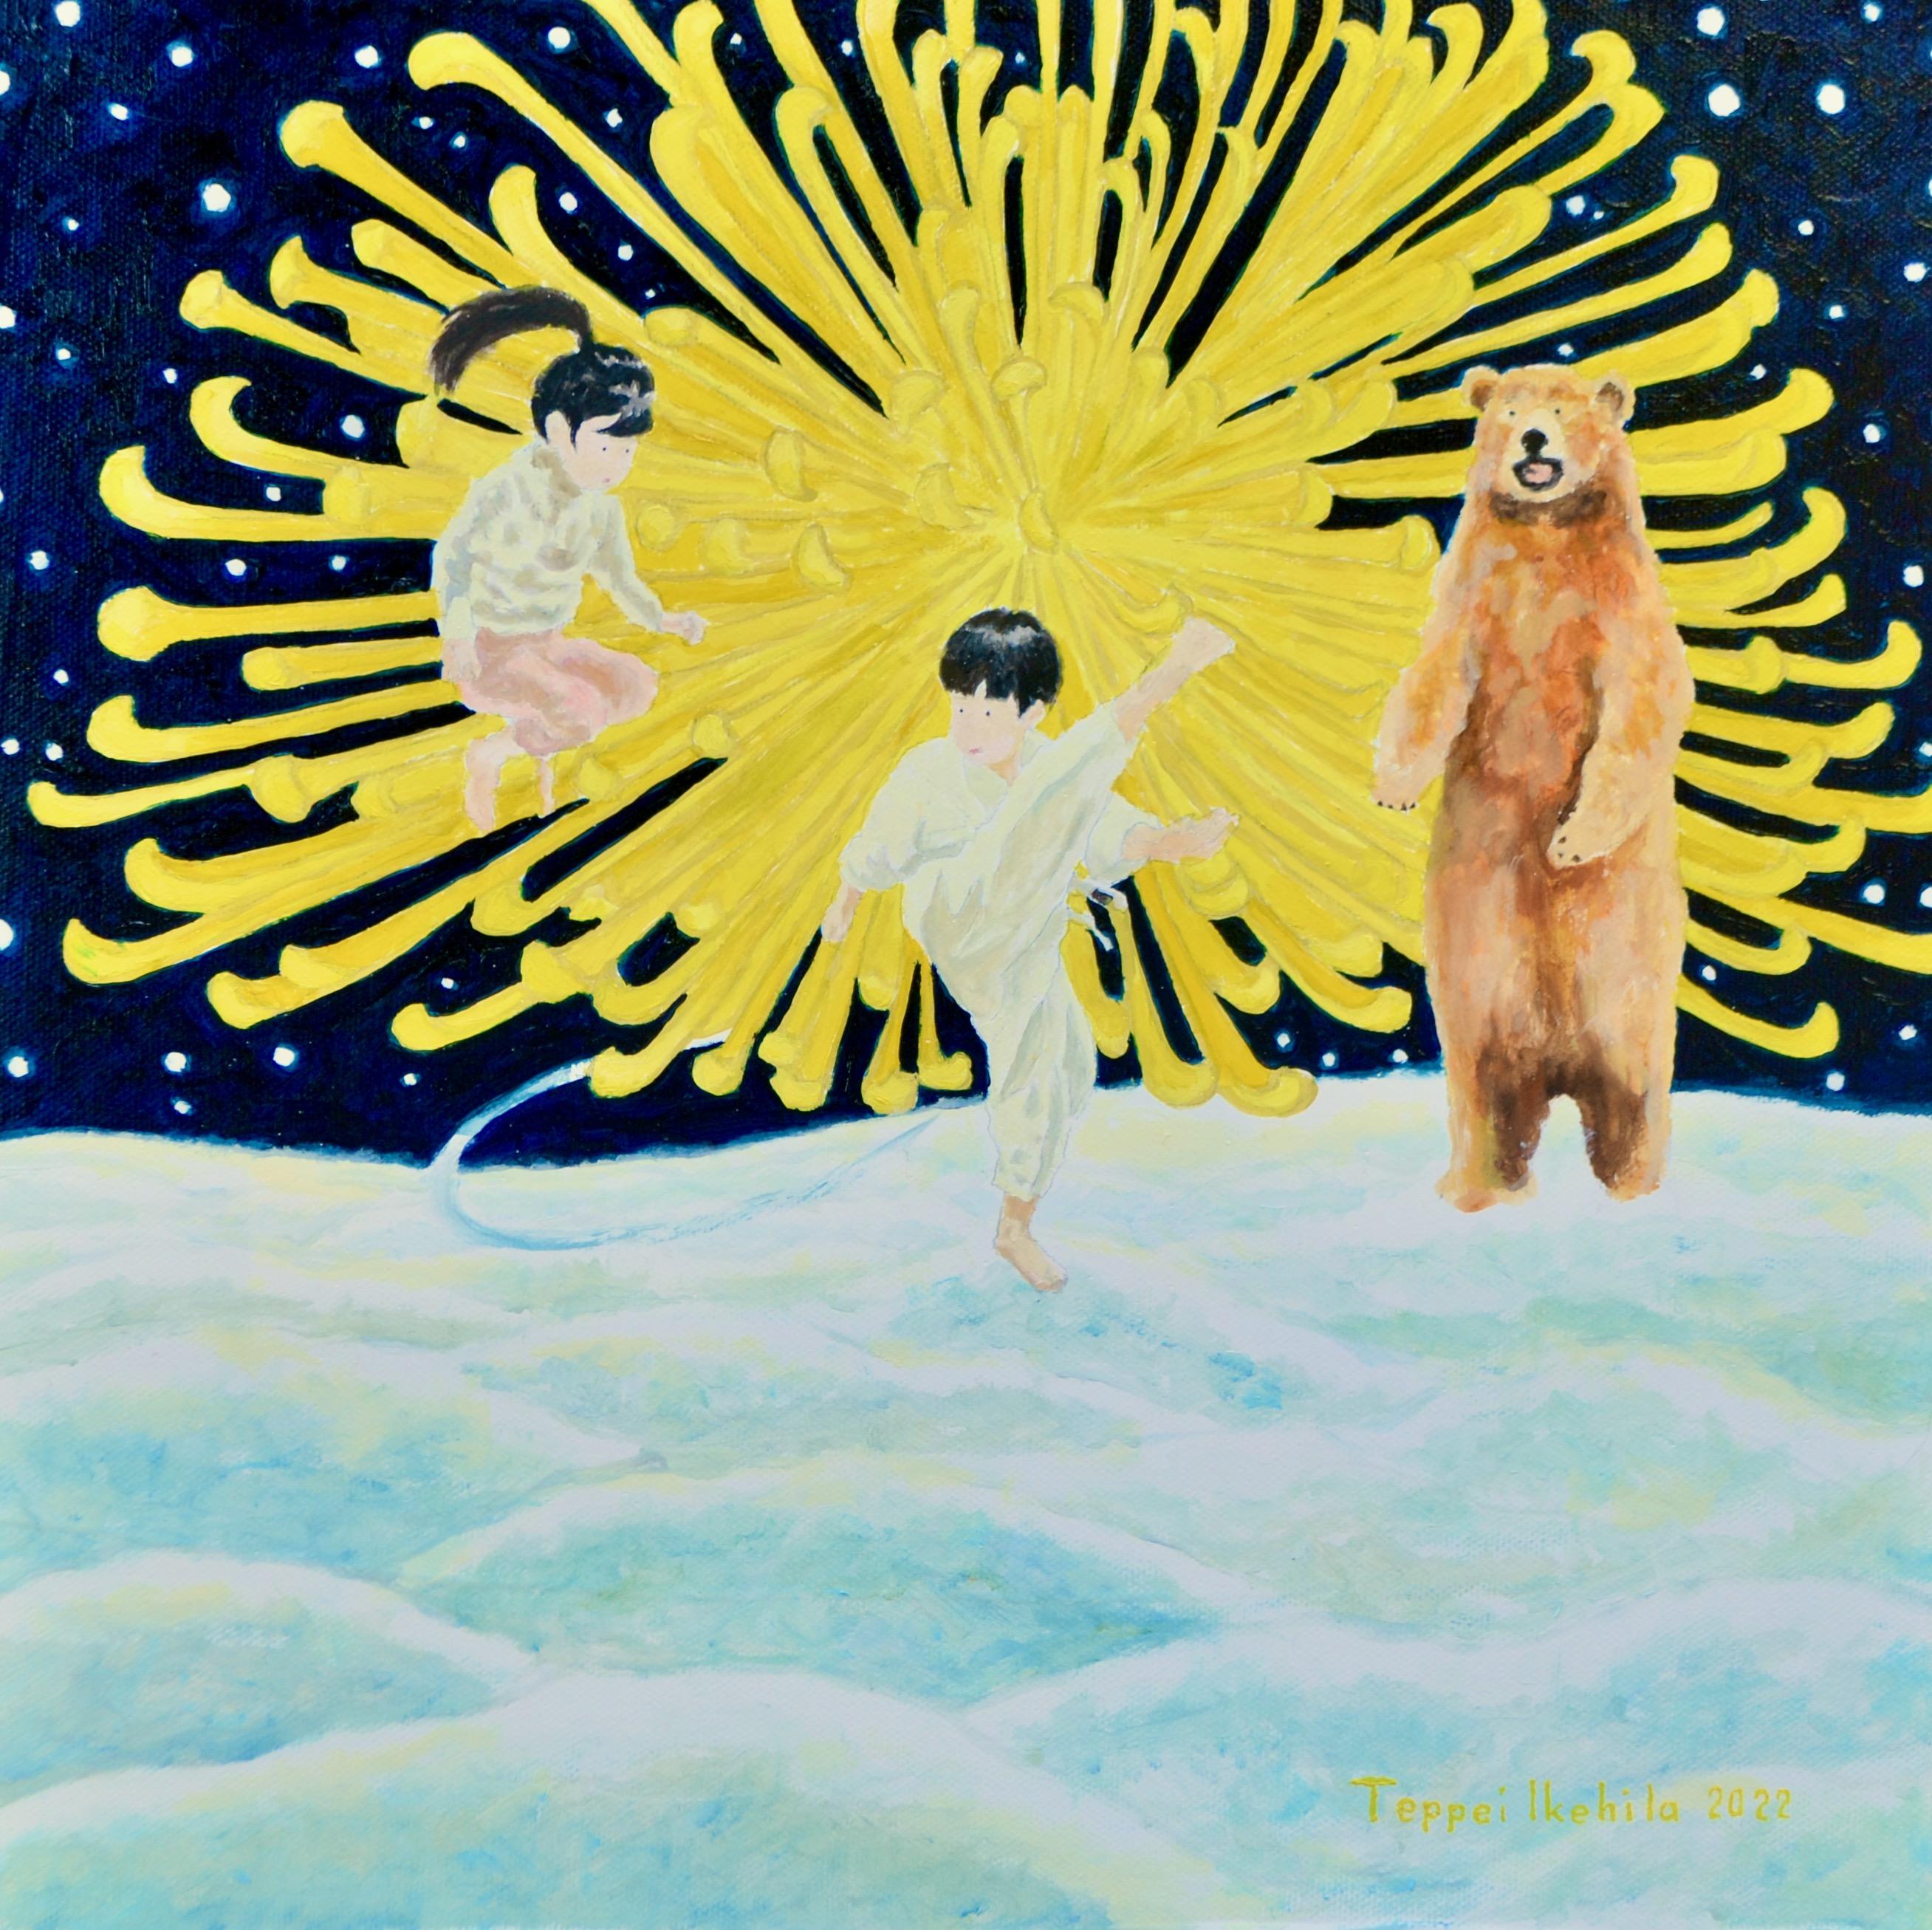 Art contemporain japonais par Teppei Ikehila - L'ours veut que vous arrêtiez de vous battre